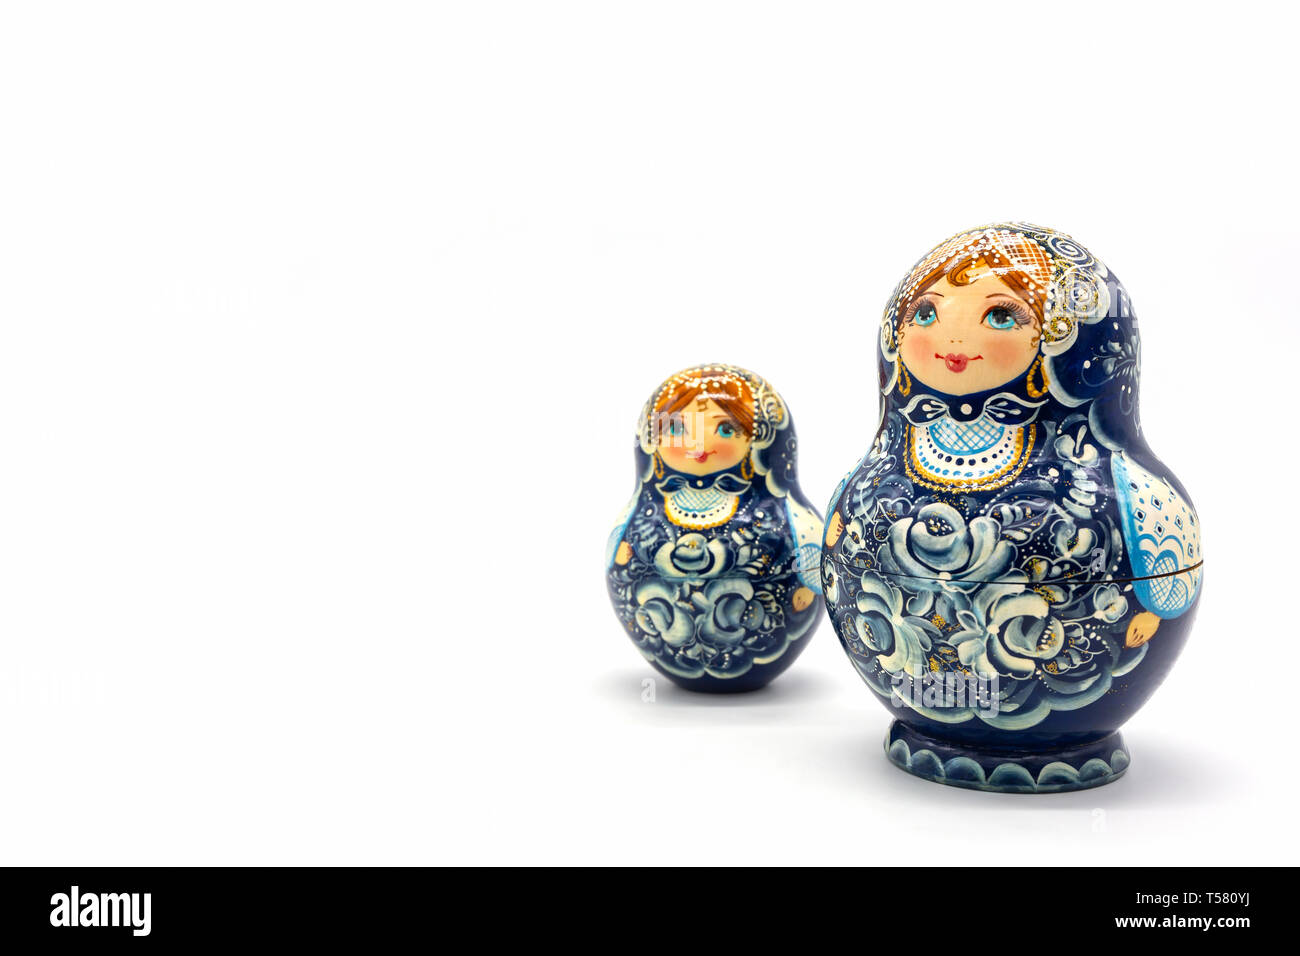 Matrjoschka Puppen isoliert auf einem weißen Hintergrund. Russische Holzpuppe Souvenir. Russische Verschachtelung Puppen, Stapeln Puppen. Stockfoto